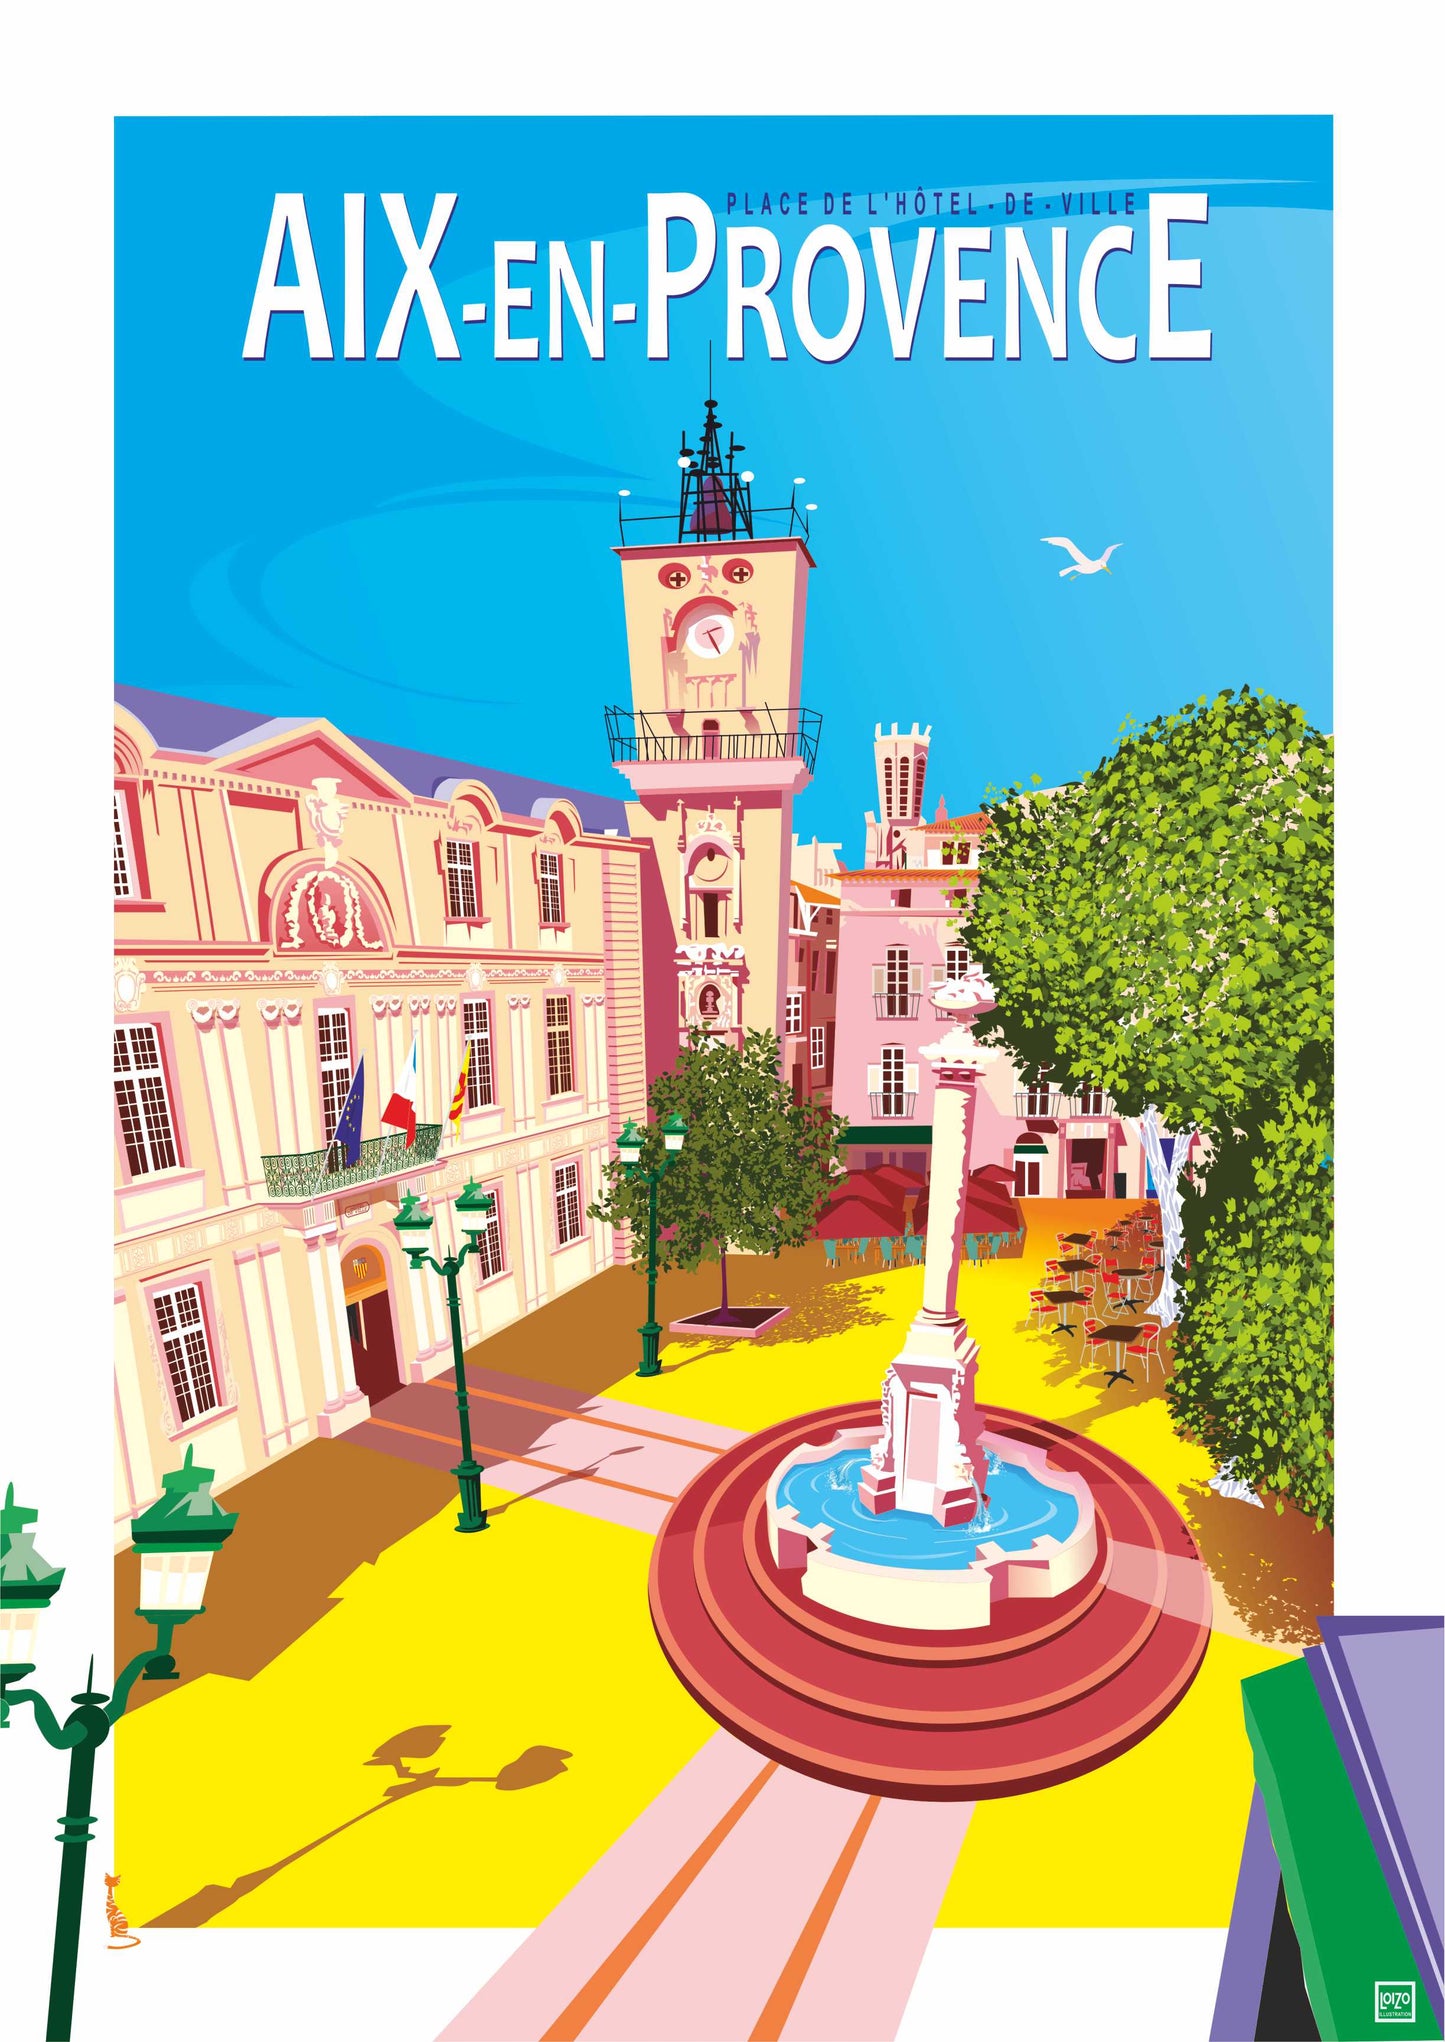 Aix en Provence " Place de l'Hôtel de ville"